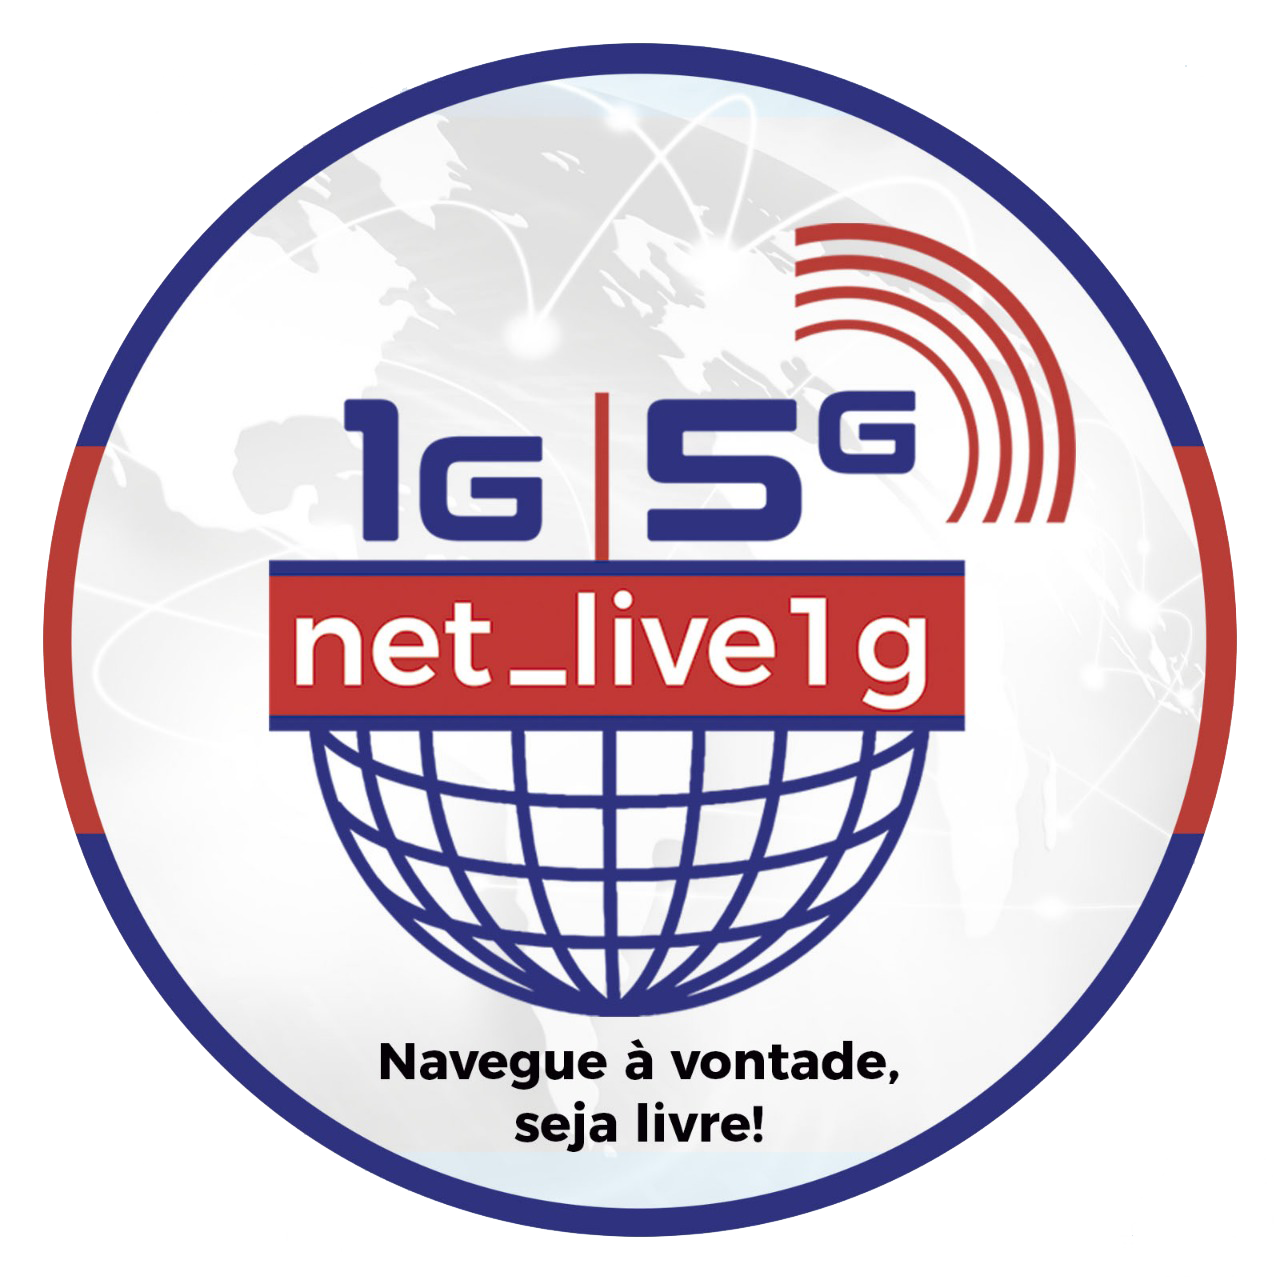 NET LIVE1G